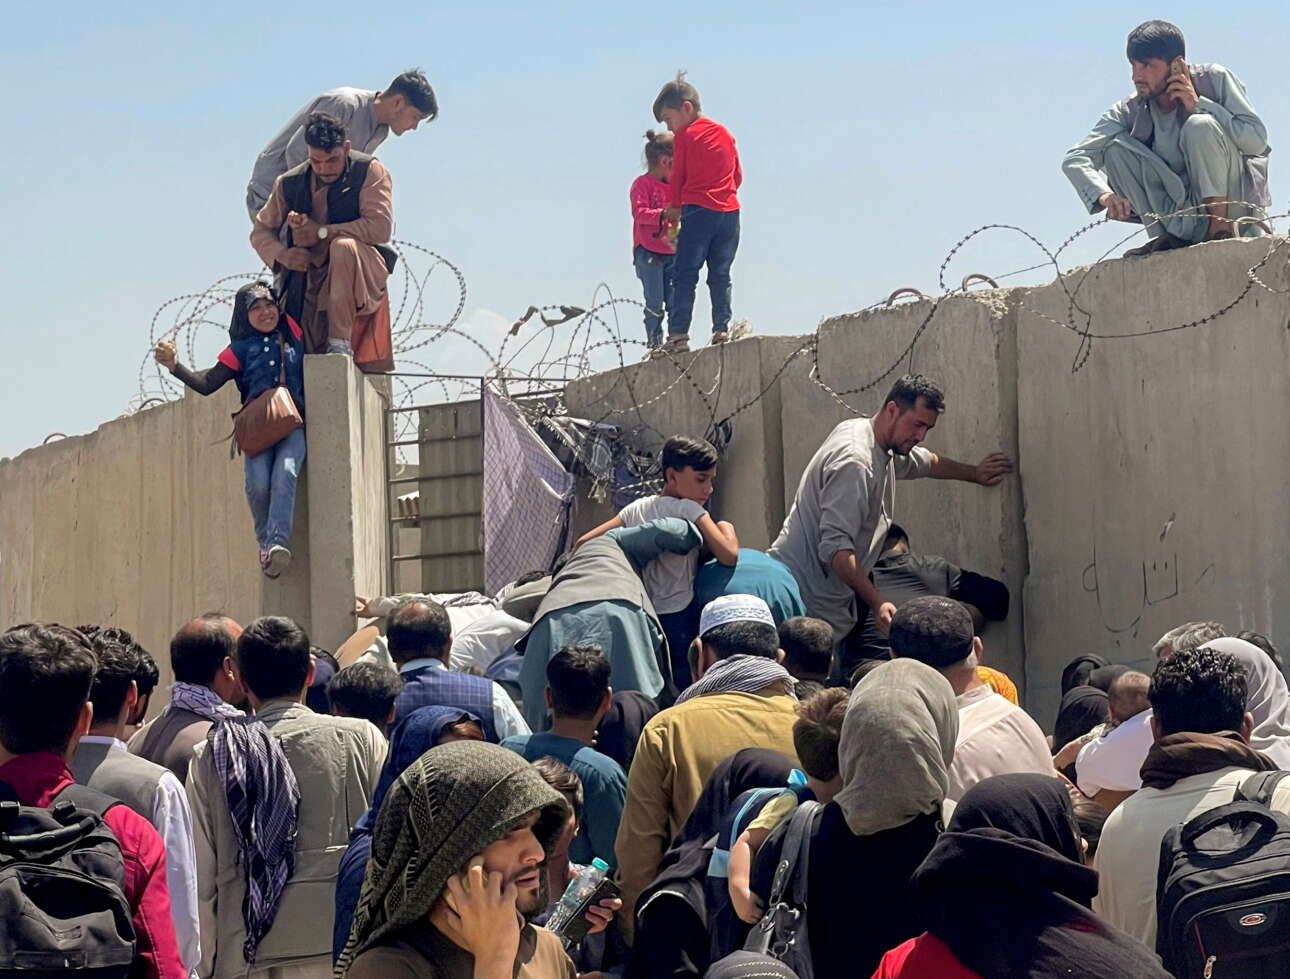 Απελπισμένοι πολίτες, οικογενειάρχες οι περισσότεροι, προσπαθώντας να μπουν στο αεροδρόμιο μπας και βρουν αεροπλάνο για να γλιτώσουν από τους Ταλιμπάν